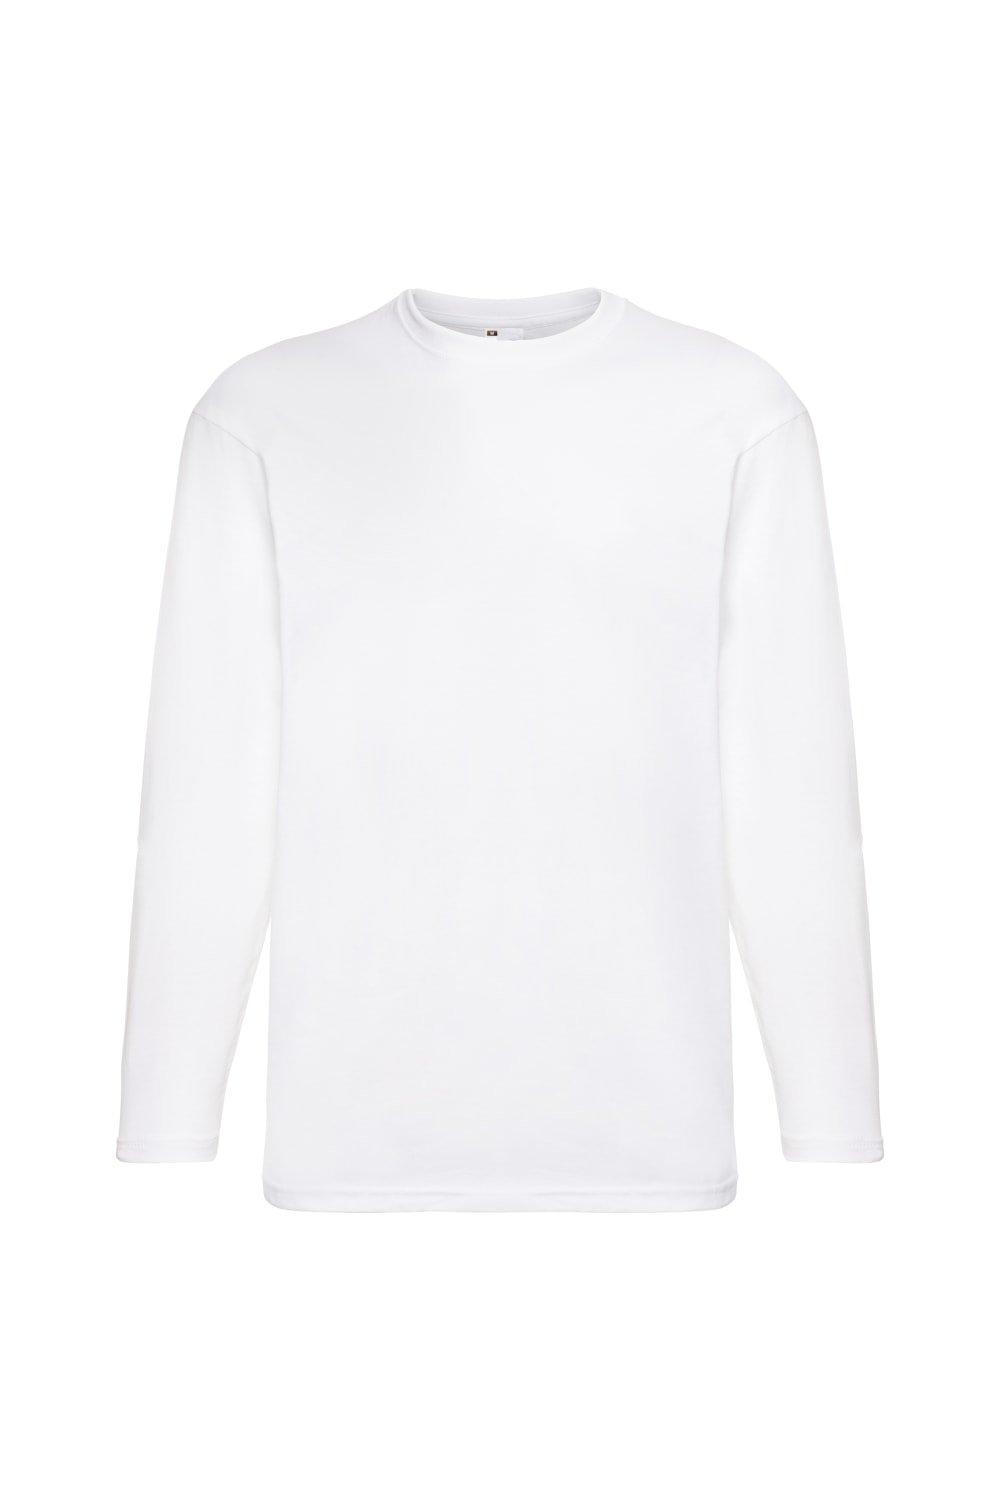 Повседневная футболка Value с длинным рукавом Universal Textiles, белый мужская футболка прикольный лис 2xl серый меланж